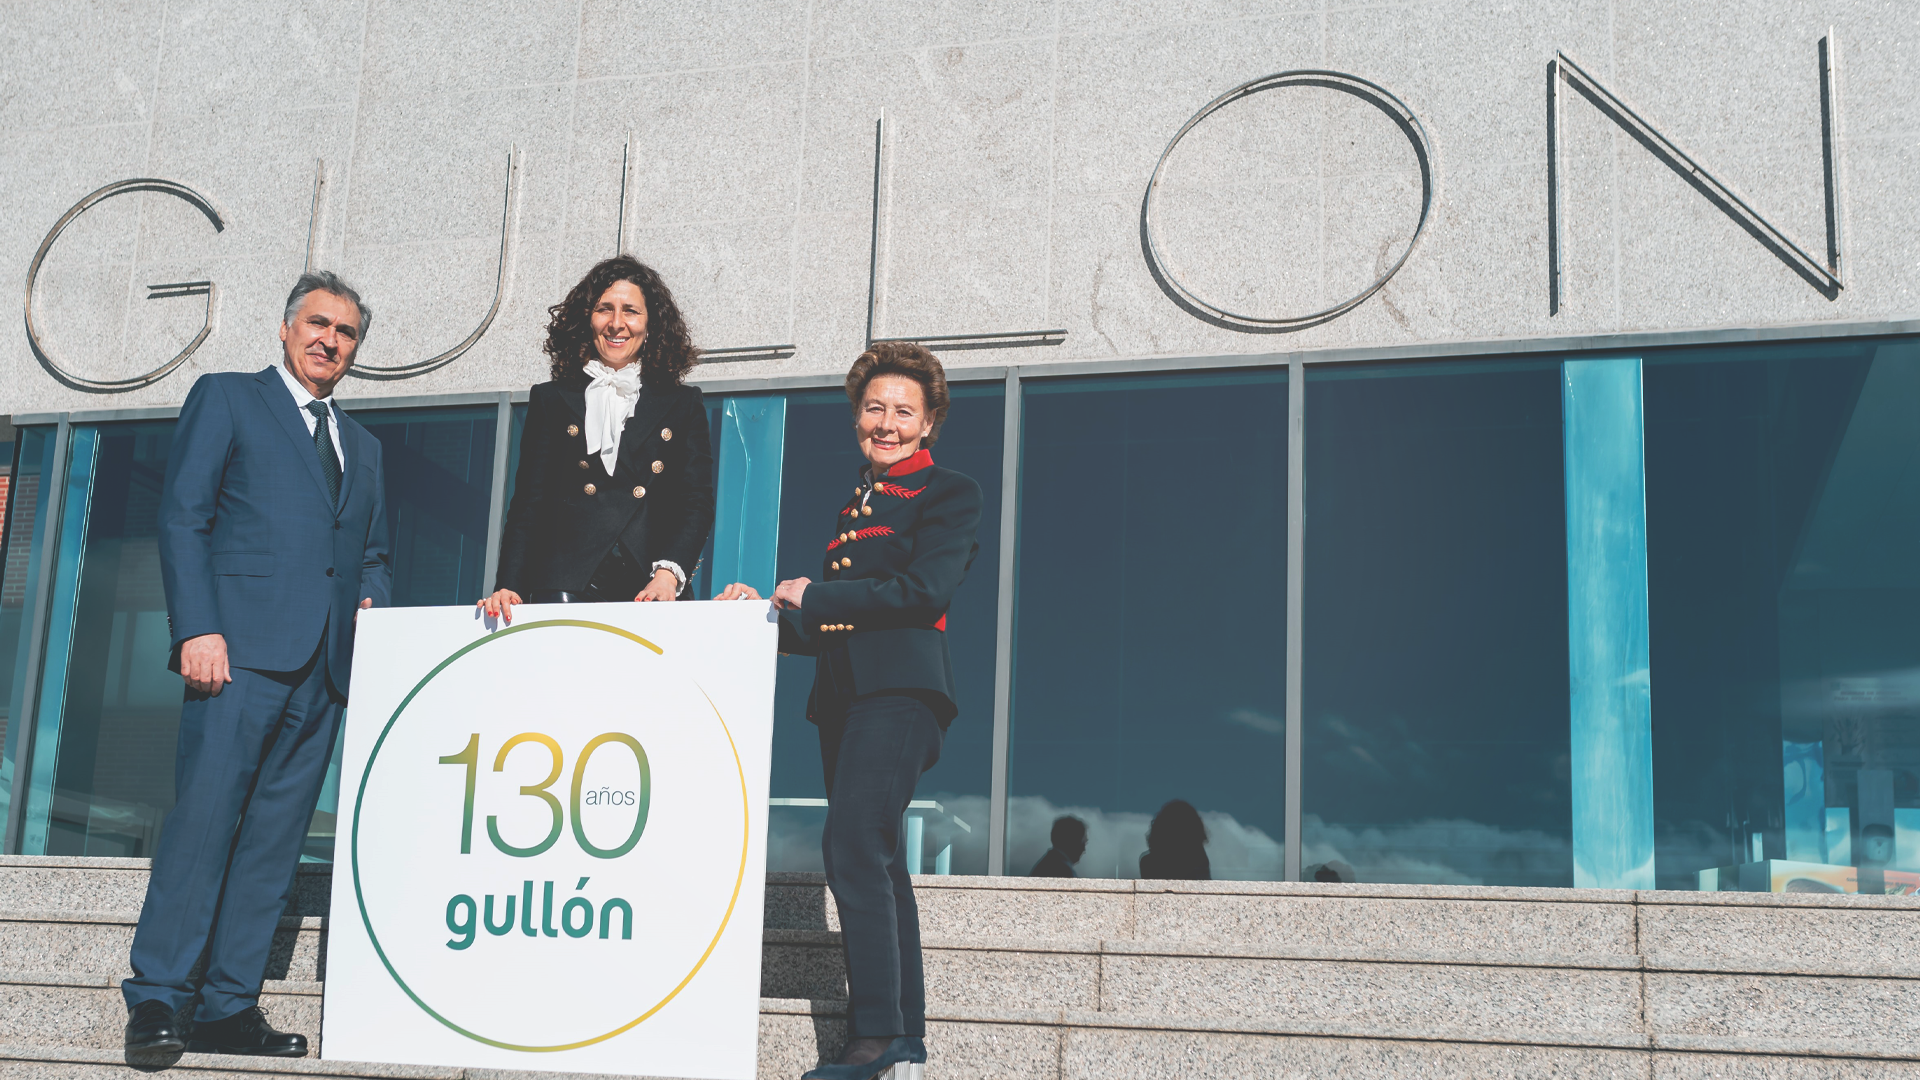 Galletas Gullón celebra su 130 aniversario en 2022 con un sólido liderazgo en el sector